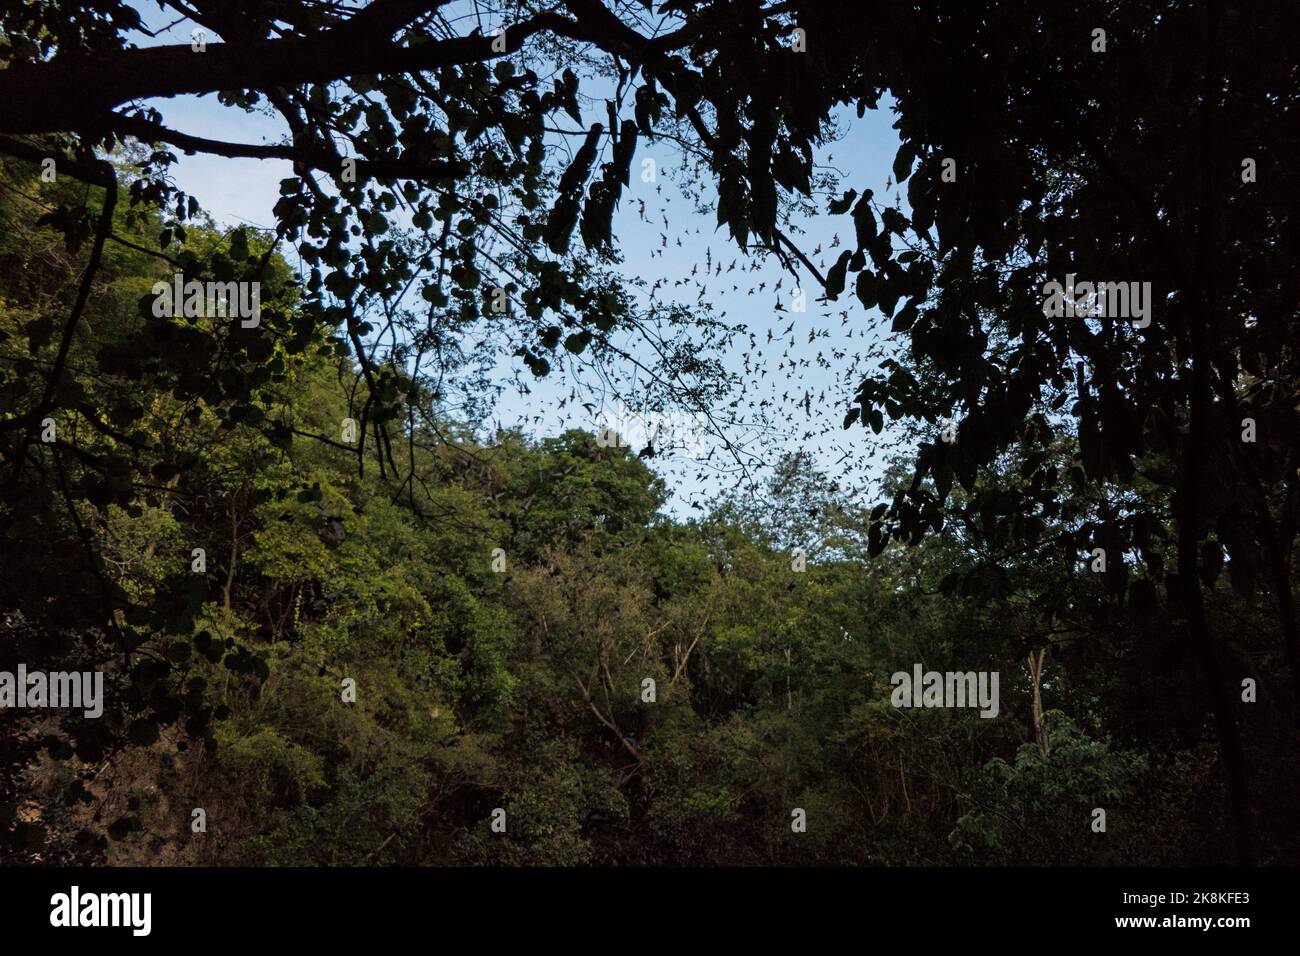 Il vulcano Bat di Calakmul nella foresta di Campeche, Messico (Volcán de los Murciélagos). Milioni di pipistrelli volano da un cenote secco al crepuscolo Foto Stock